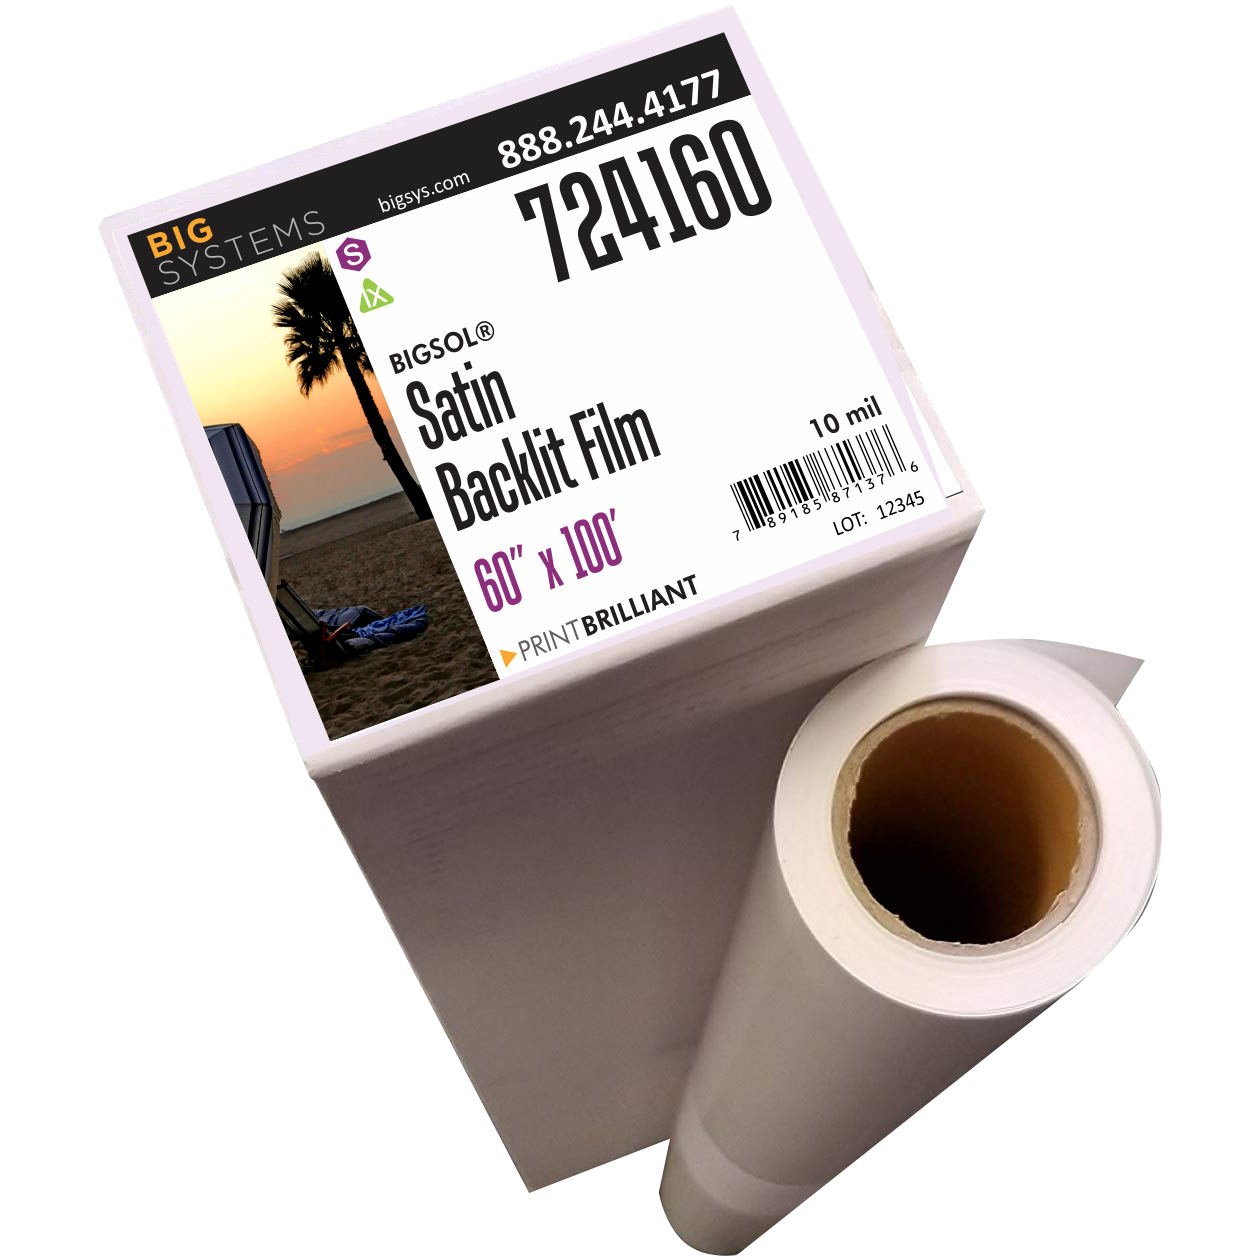 BigSol® 724 Satin Backlit Film 60" x 100'